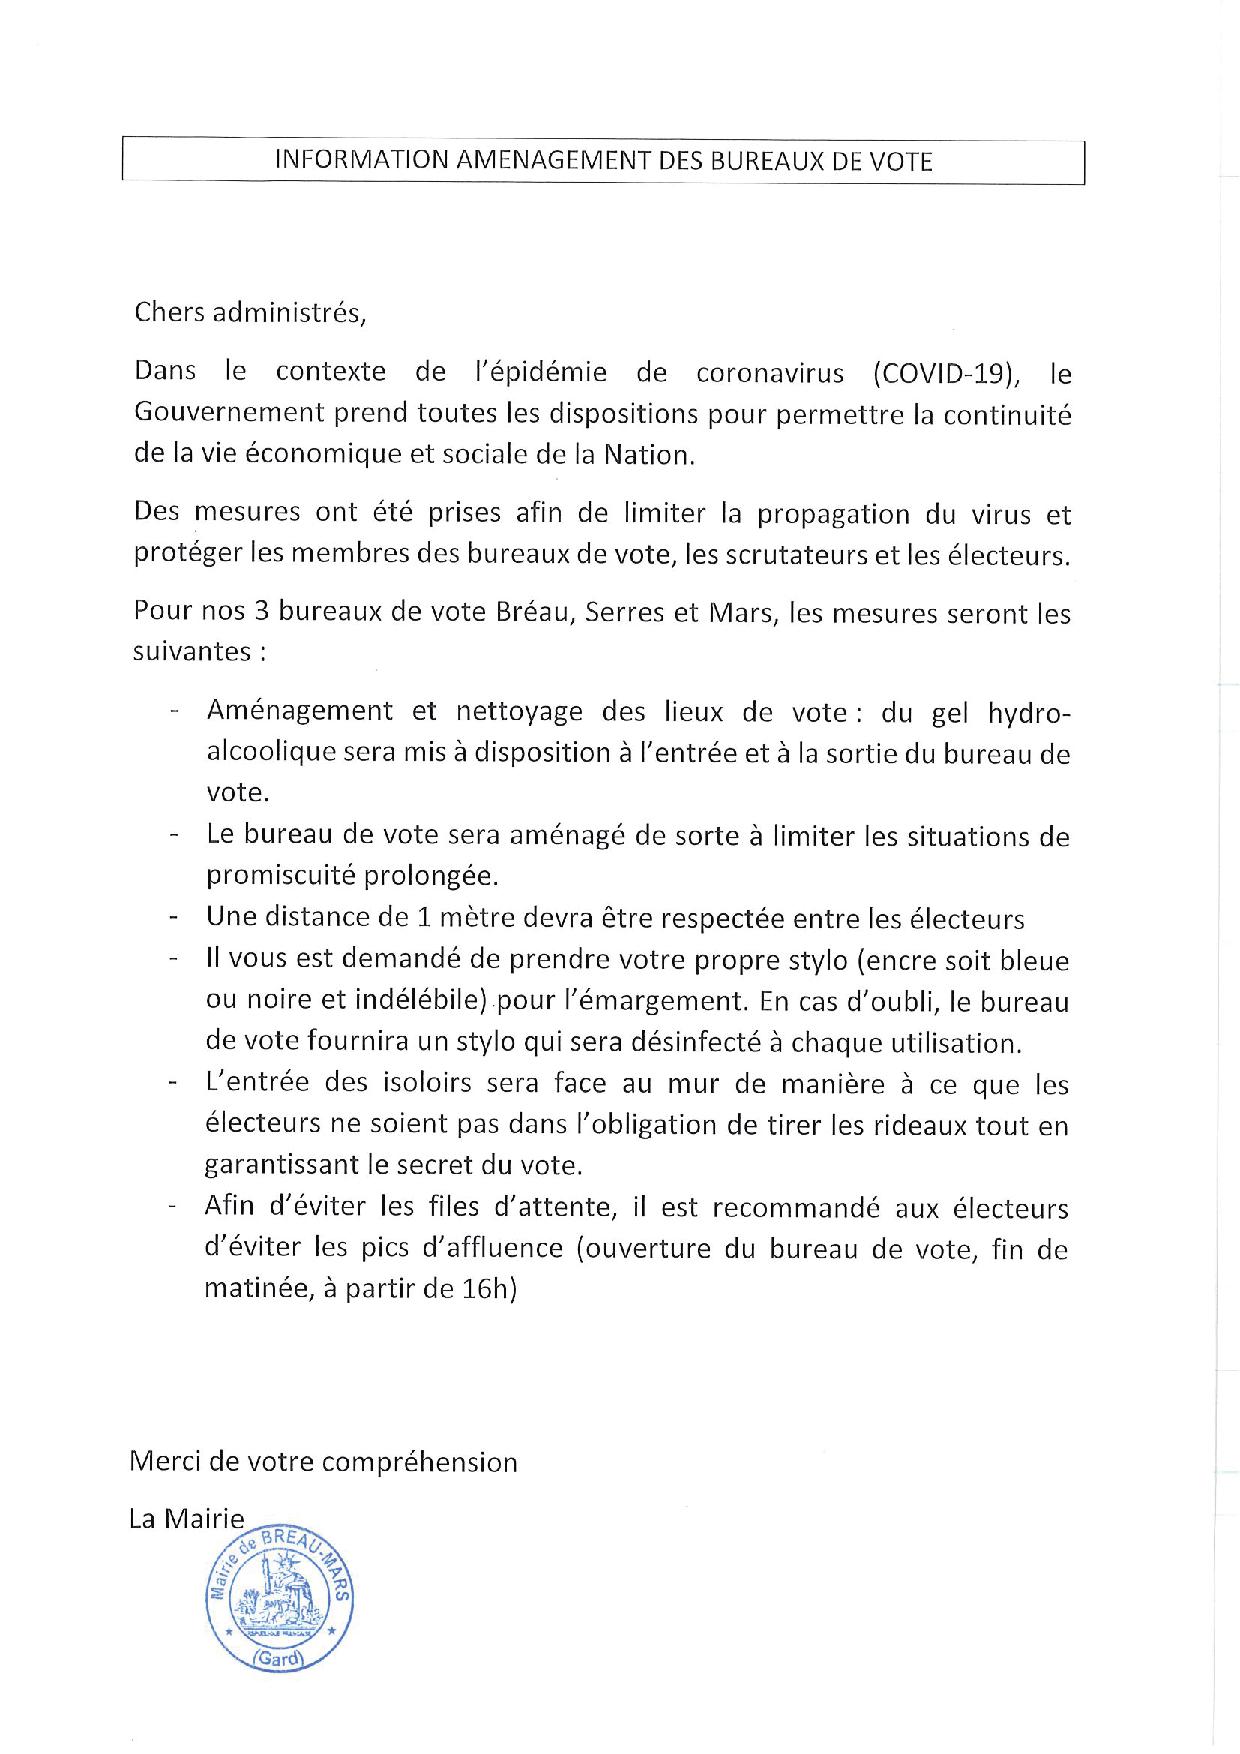 ELECTIONS MUNICIPALES : CORONAVIRUS : AMENAGEMENT DES BUREAUX DE VOTE